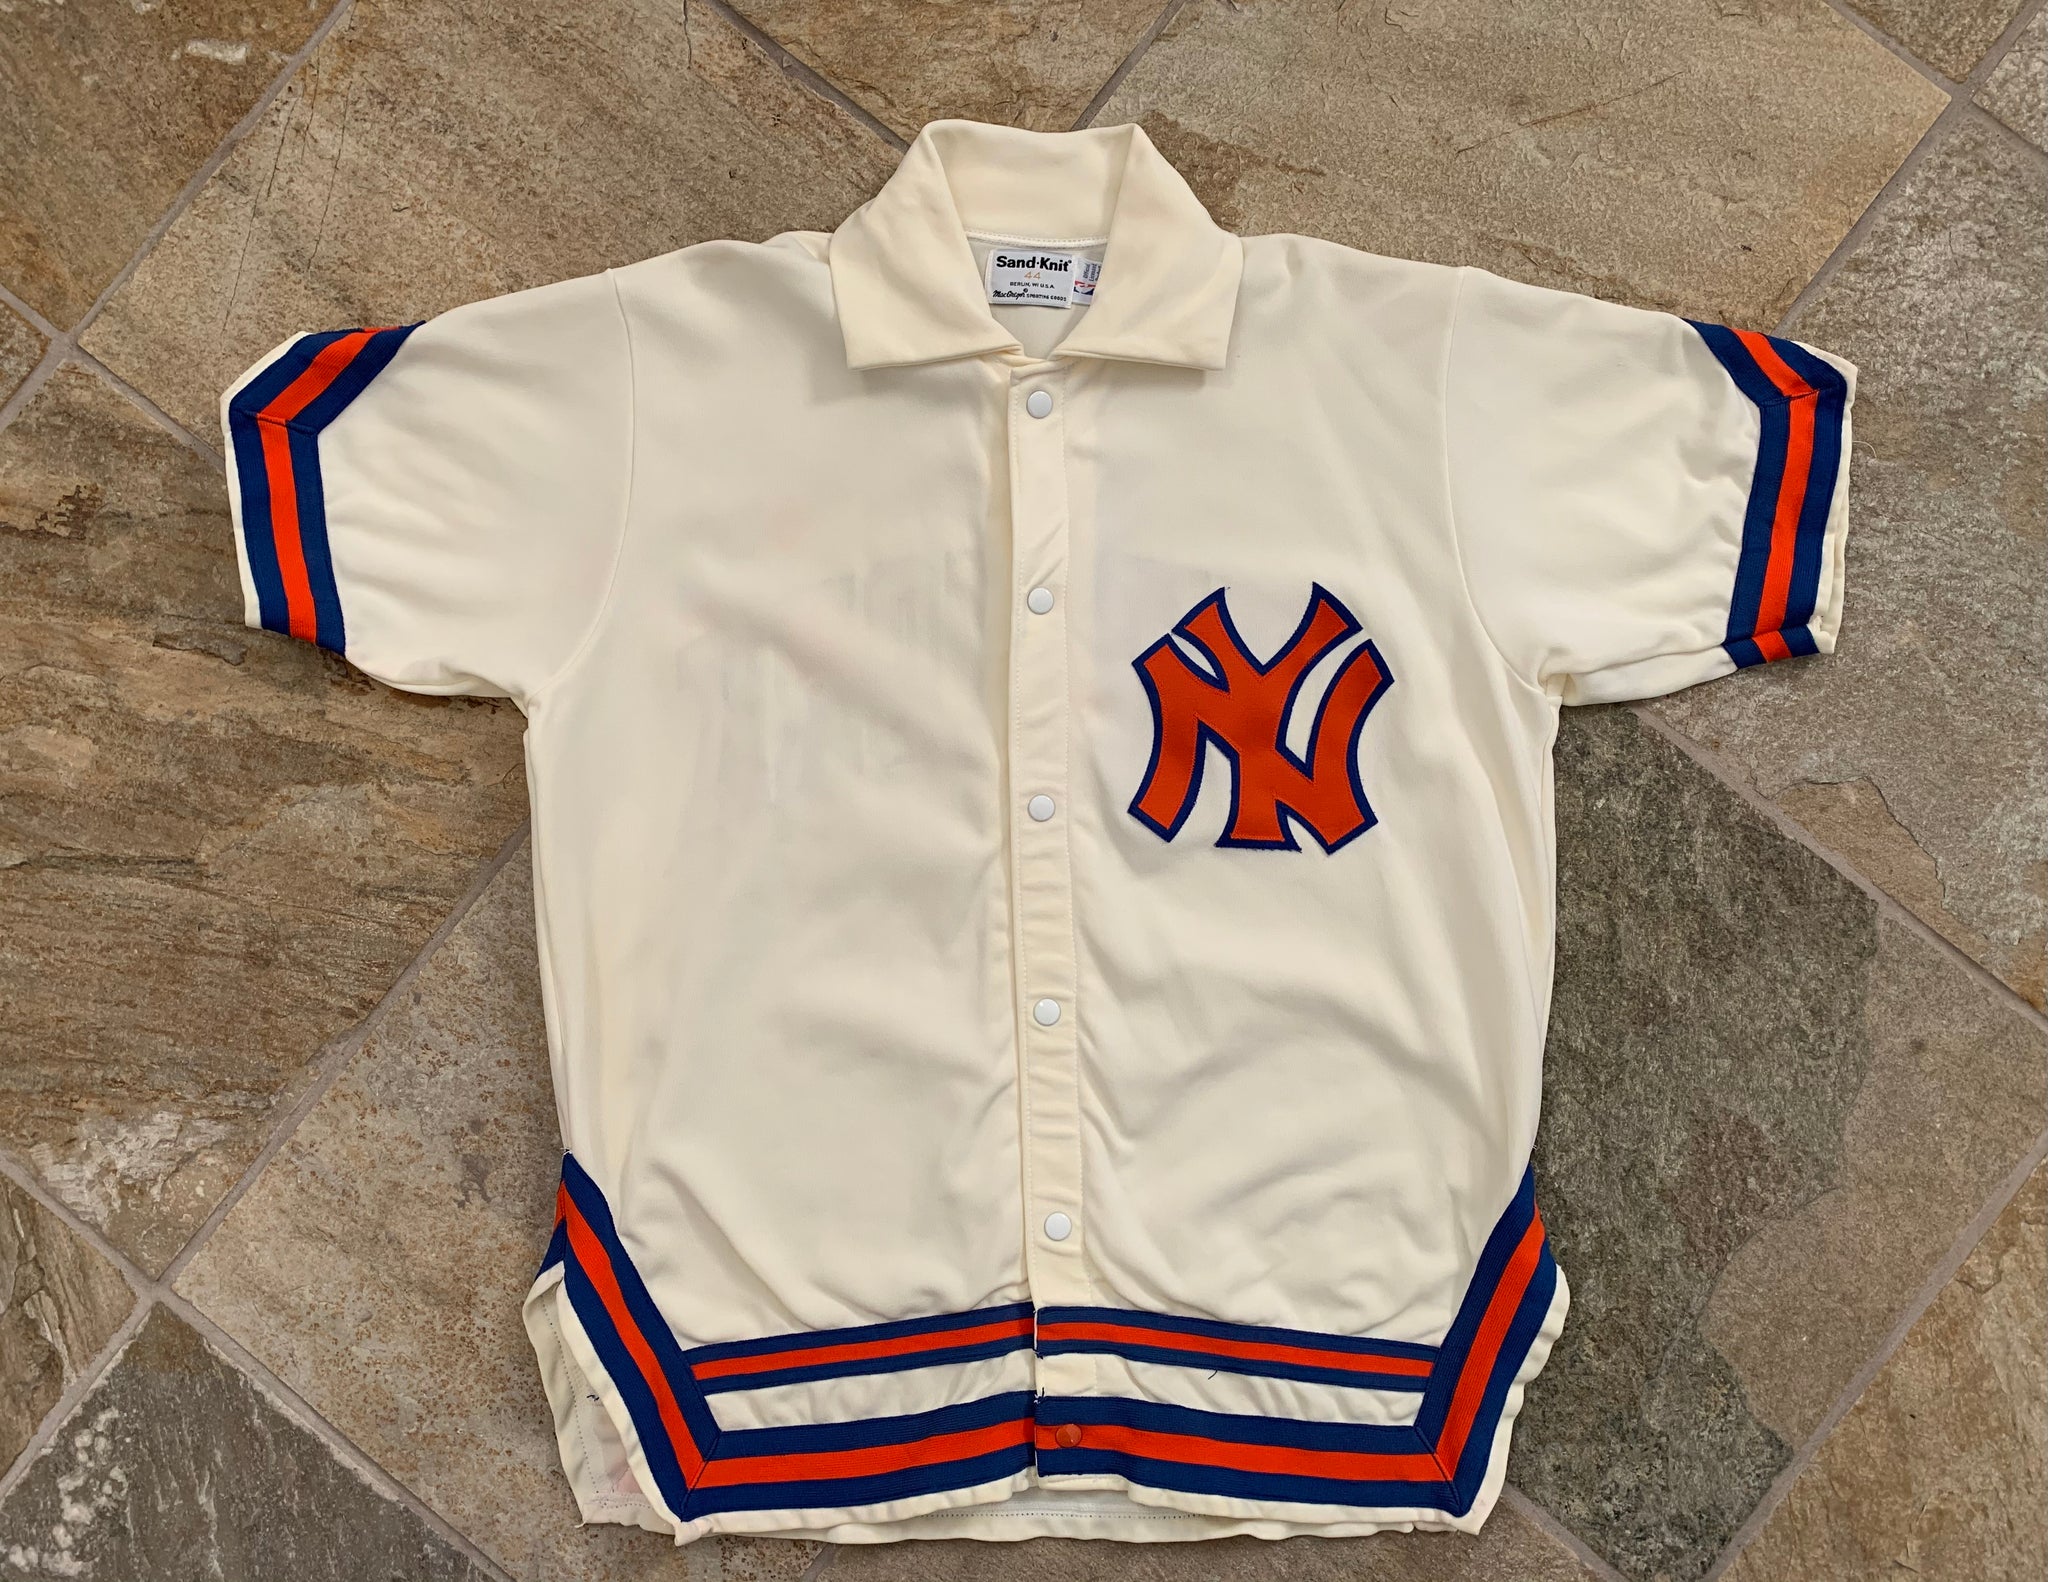 New York Knicks Vintage Jerseys, Knicks Retro Jersey